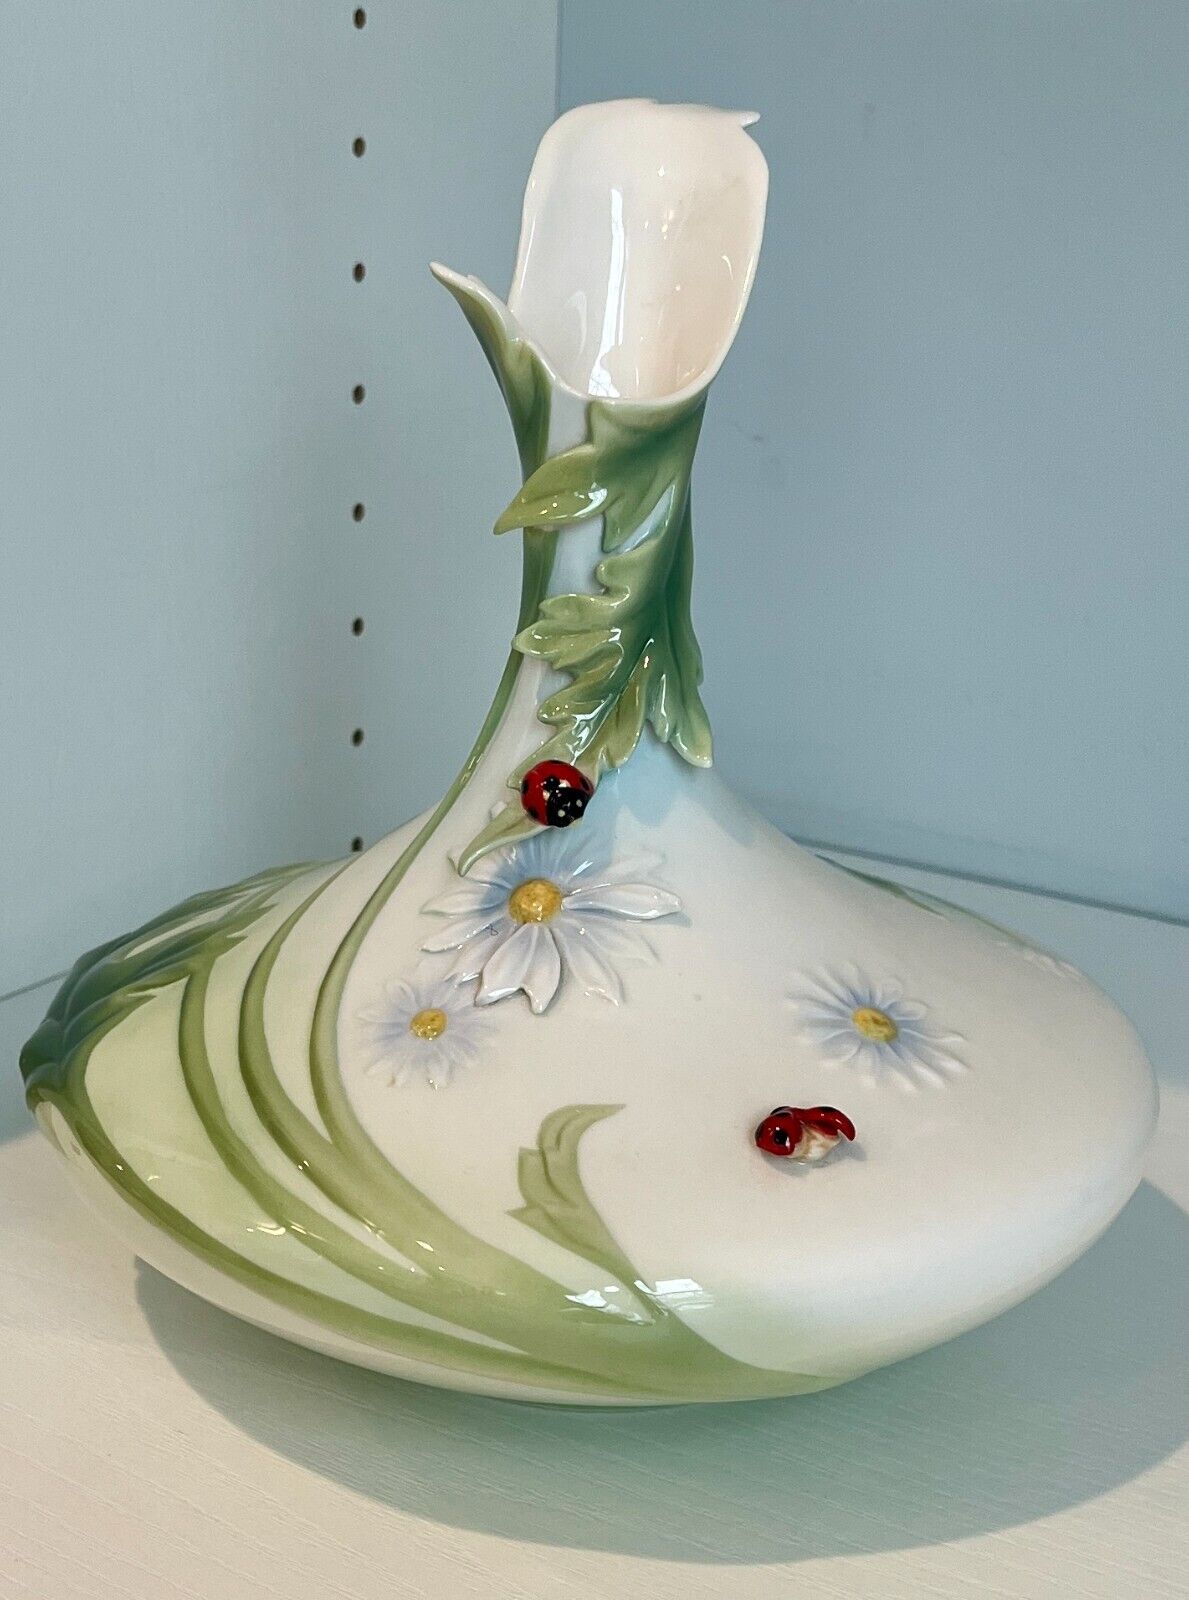 Franz-LADY BUG Design Sculptured Porcelain VASE FZ00468 EUC